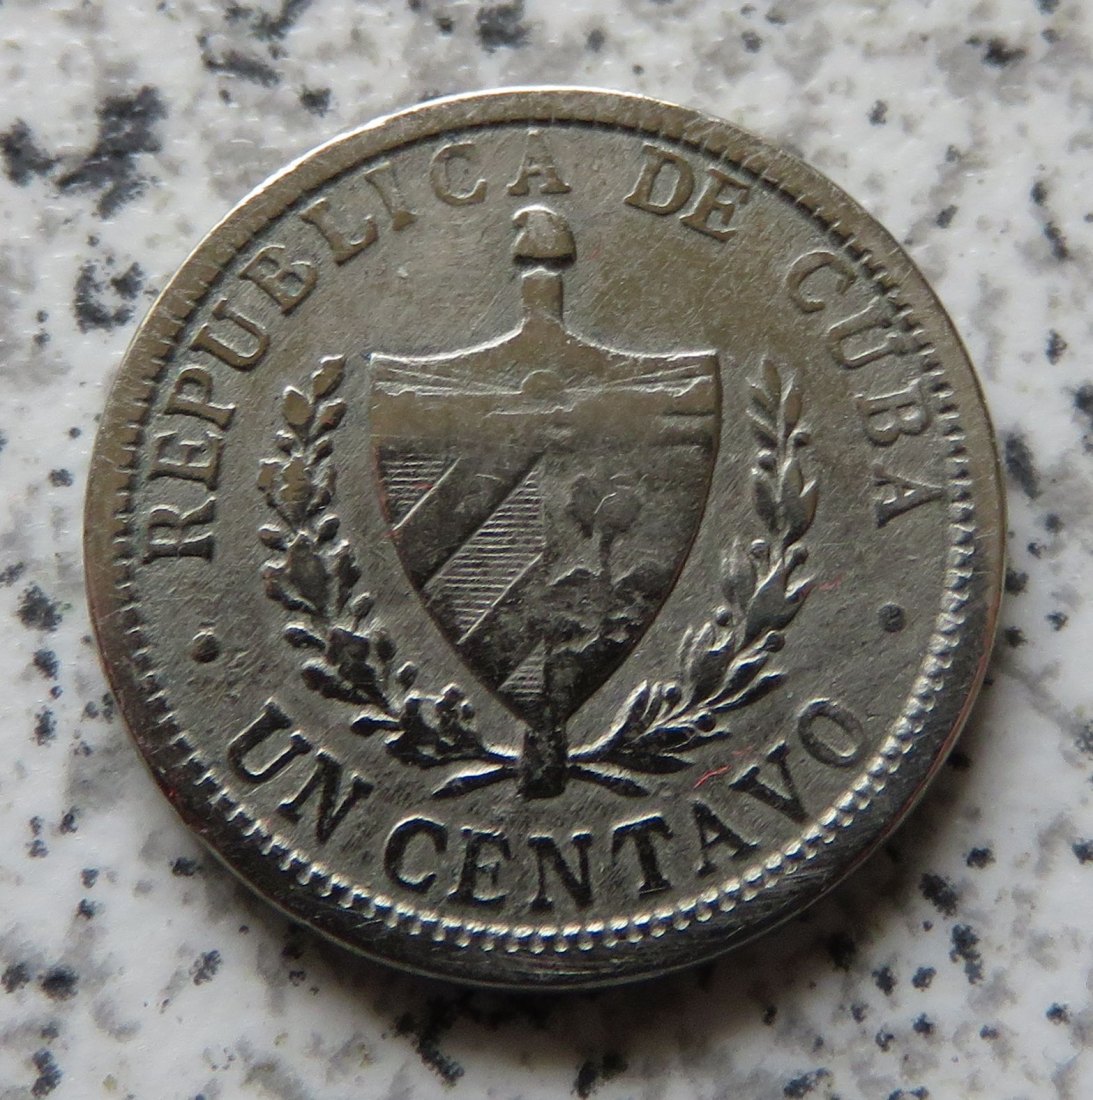  Cuba 1 Centavo 1920   